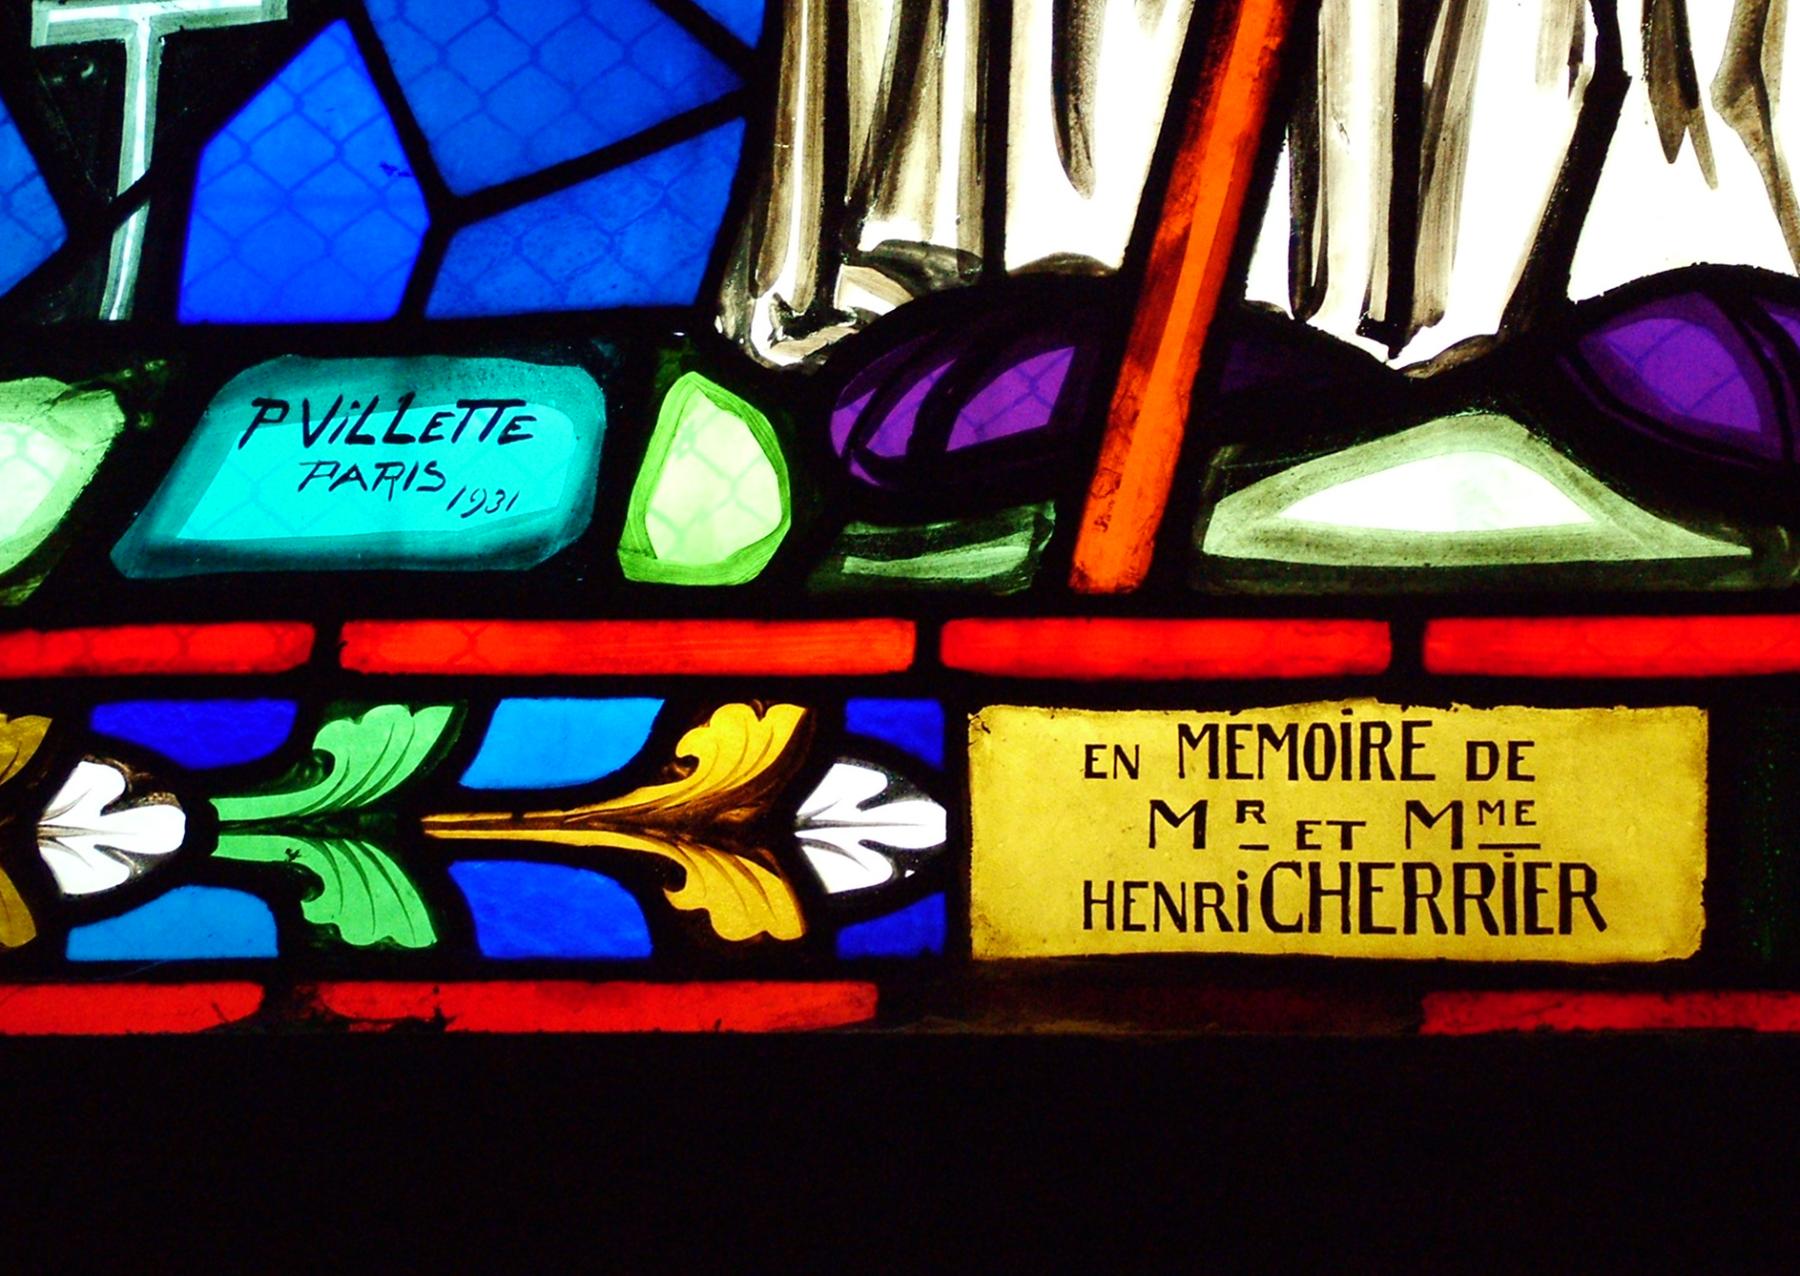 Ensemble des trois verrières du chœur (une verrière figurée et deux verrières figurées décoratives) : saint Médard, scènes de la vie de saint Médard